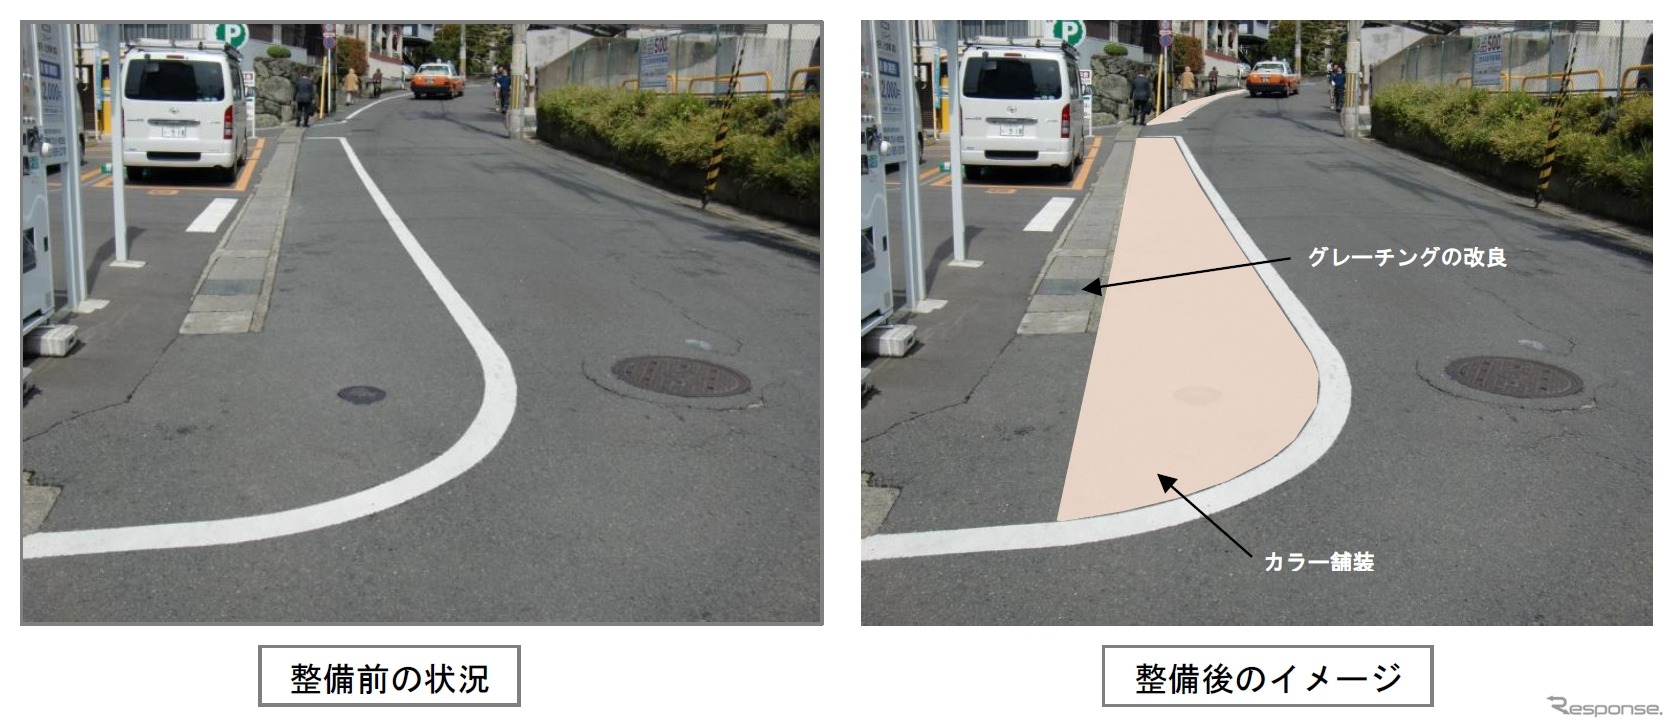 京福撮影所前駅とJR太秦駅を結ぶ道路（左）と改良後（右）のイメージ。路側帯をカラー舗装する。